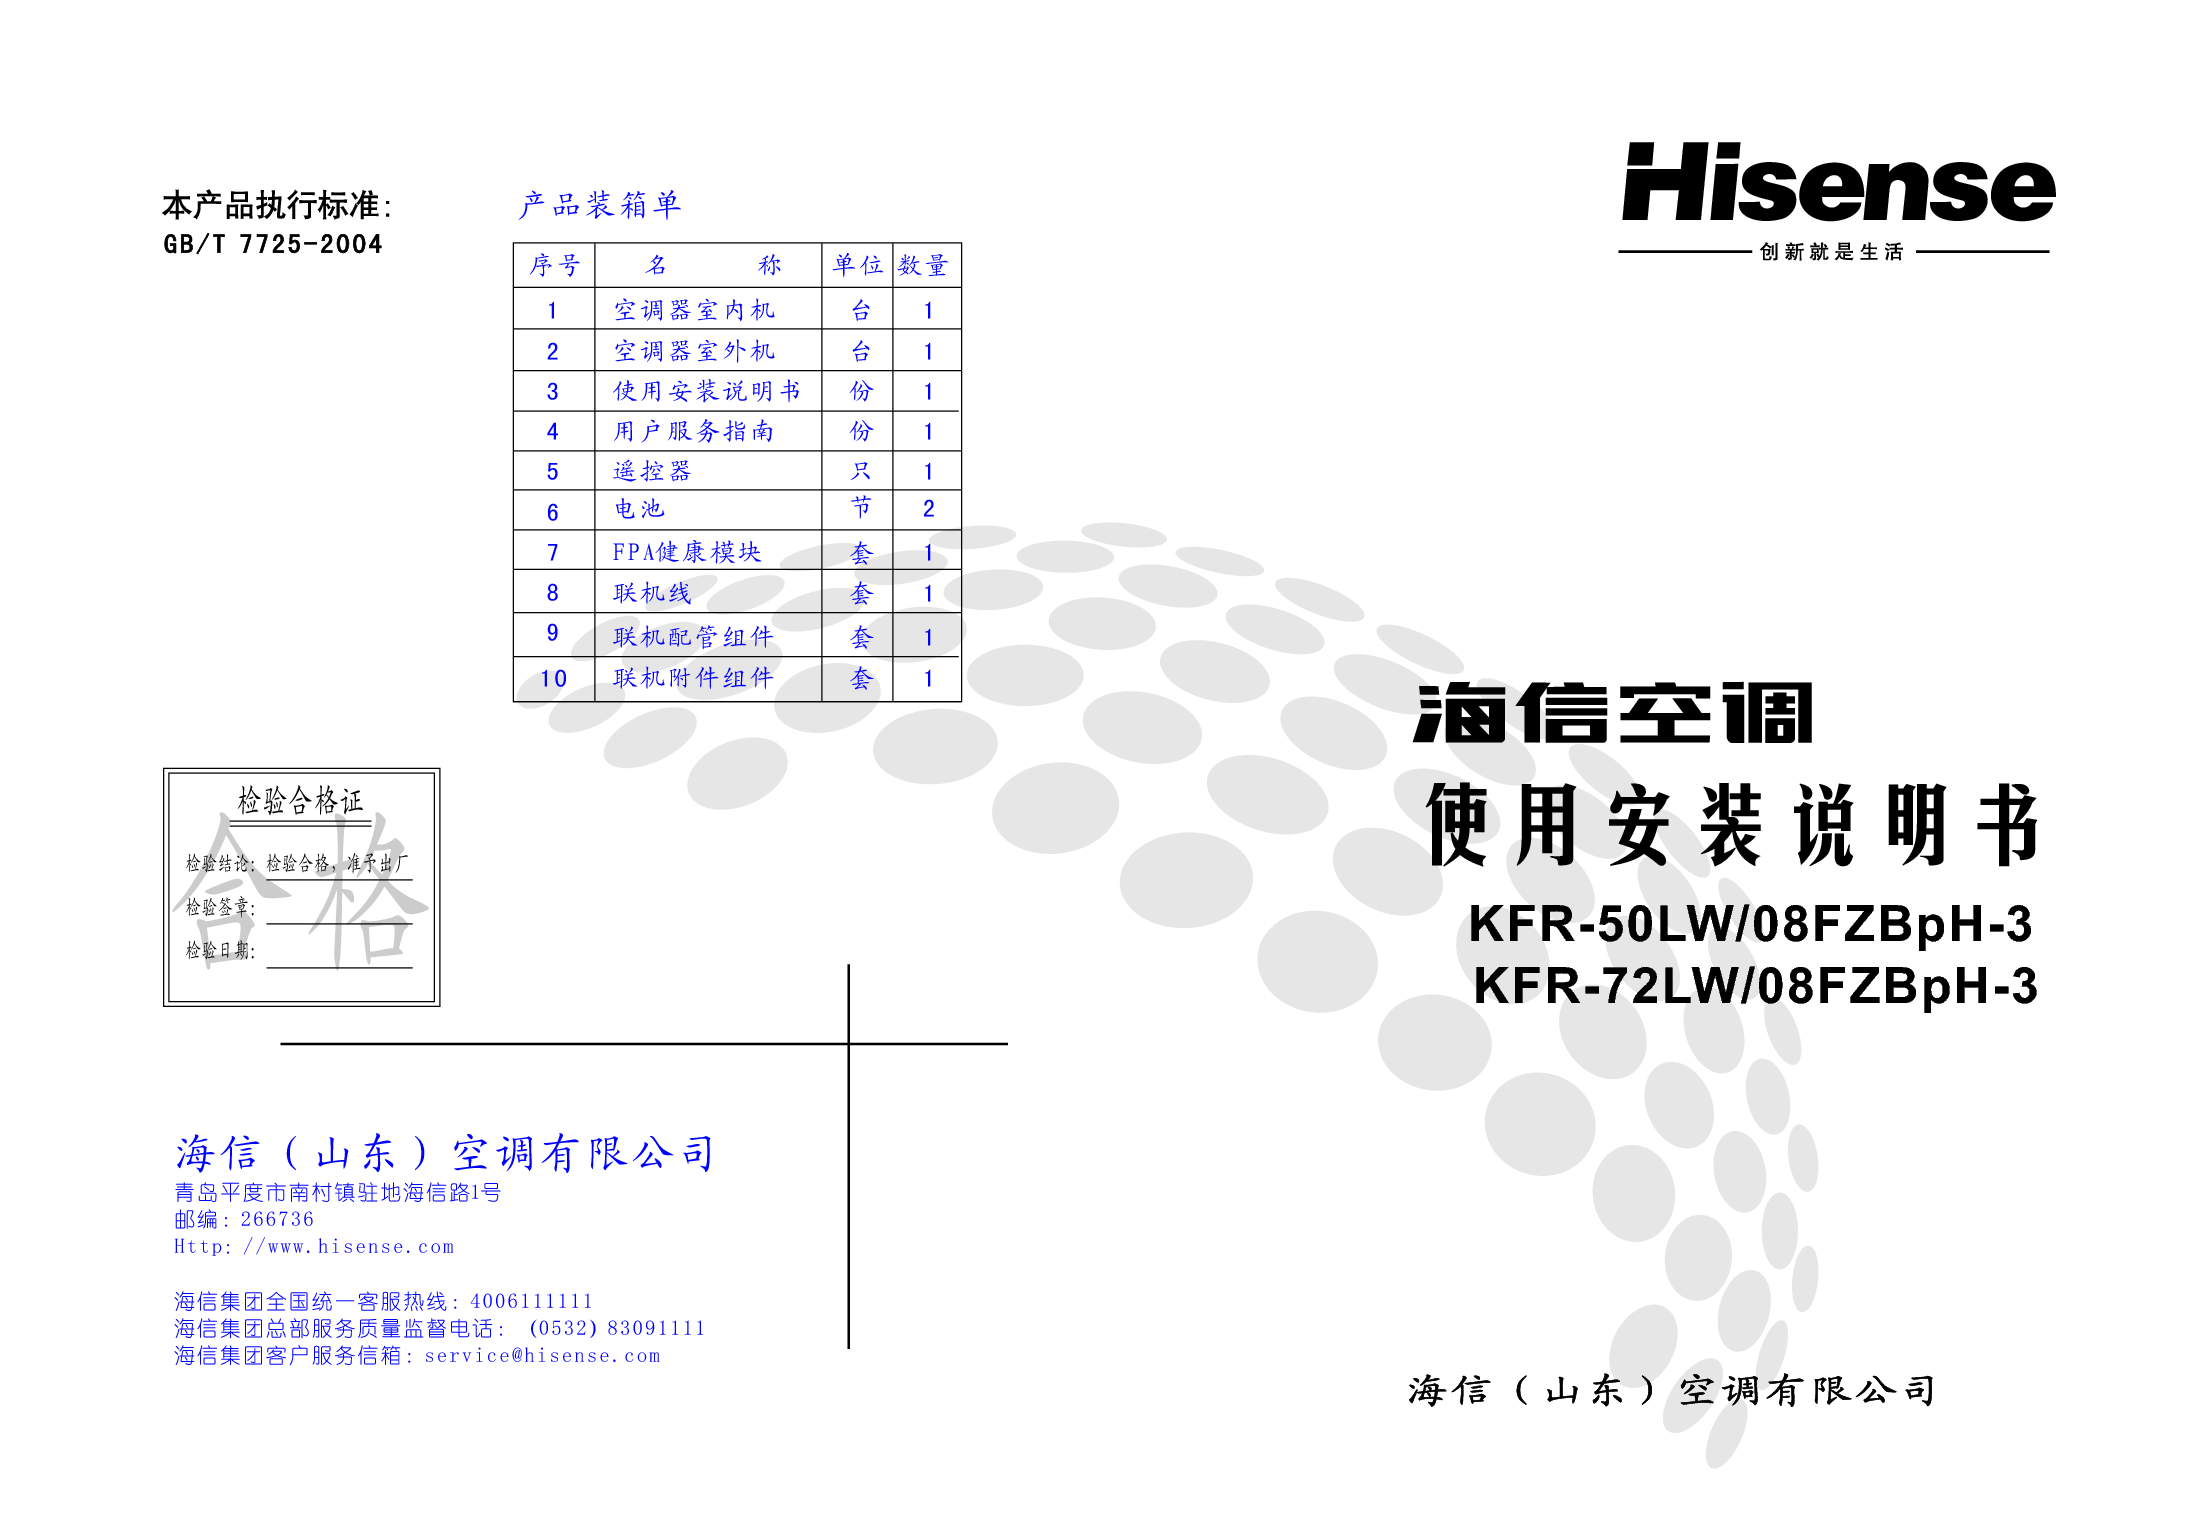 海信 Hisense KFR-50LW/08FZBpH-3 使用说明书 封面